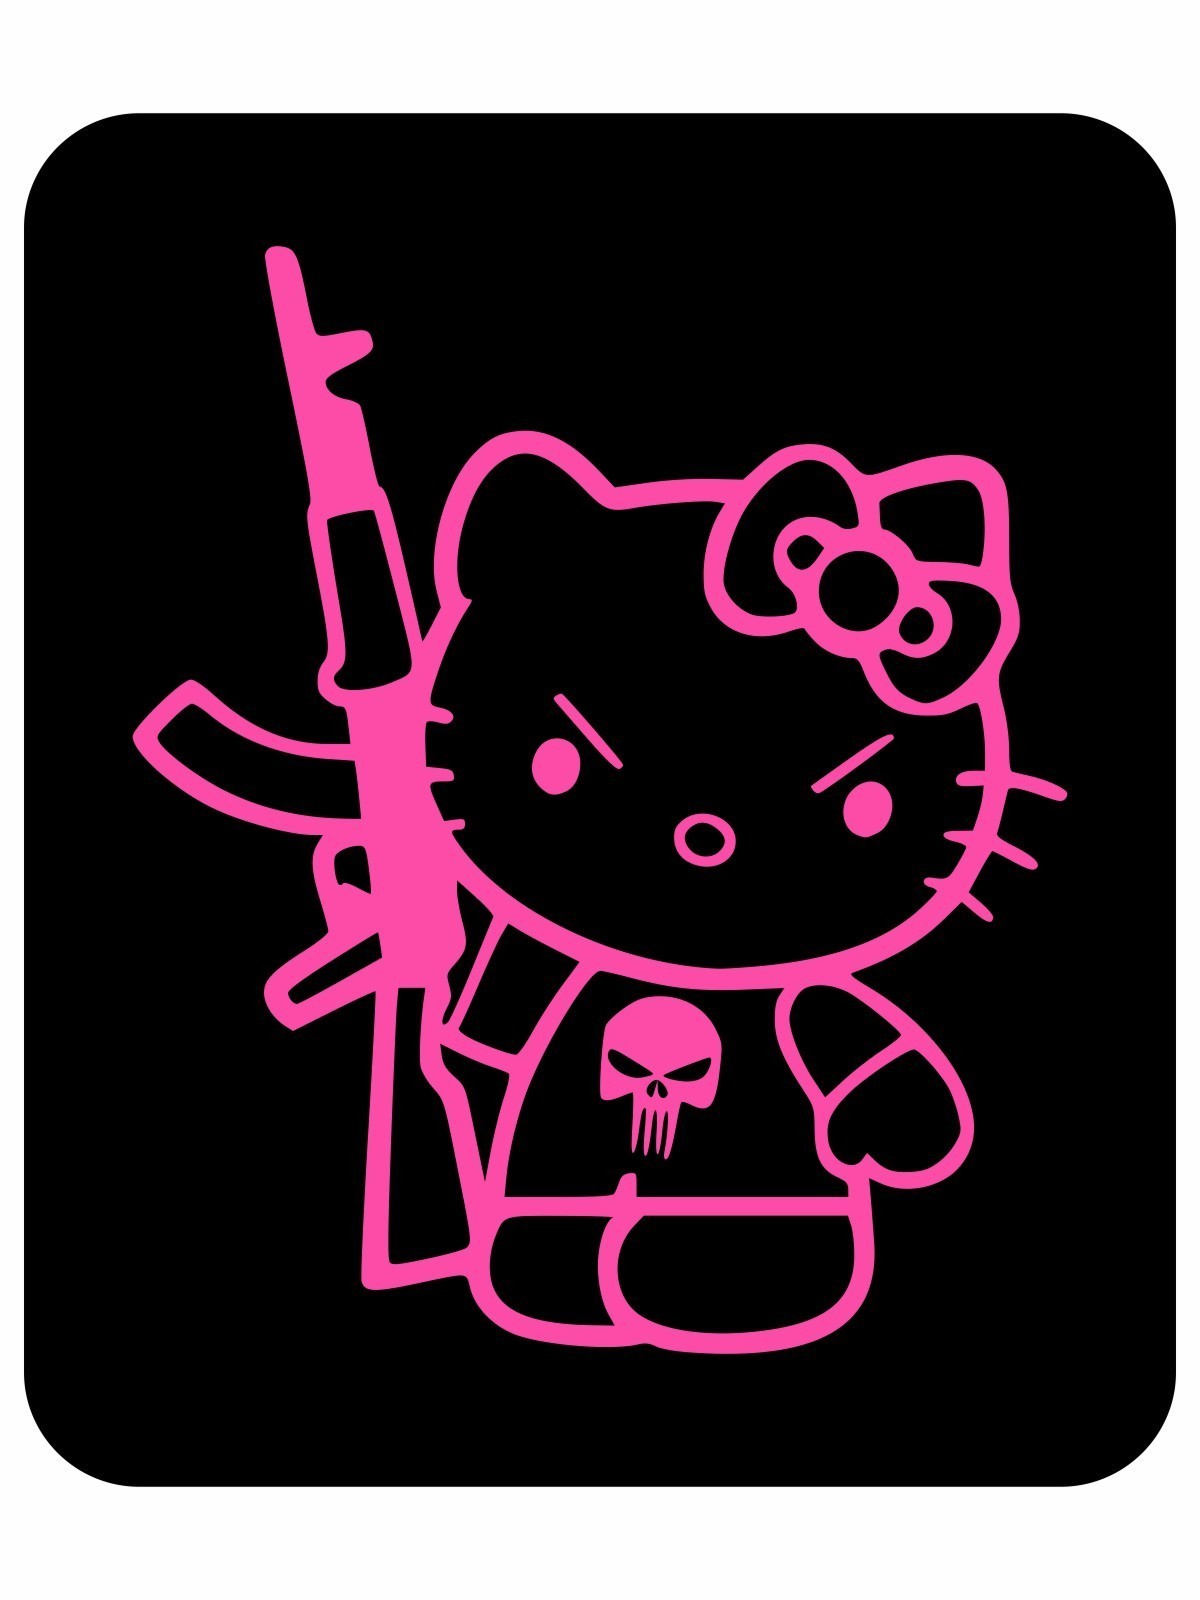 Samolepka Hello Kitty Punisher Kalashnikov